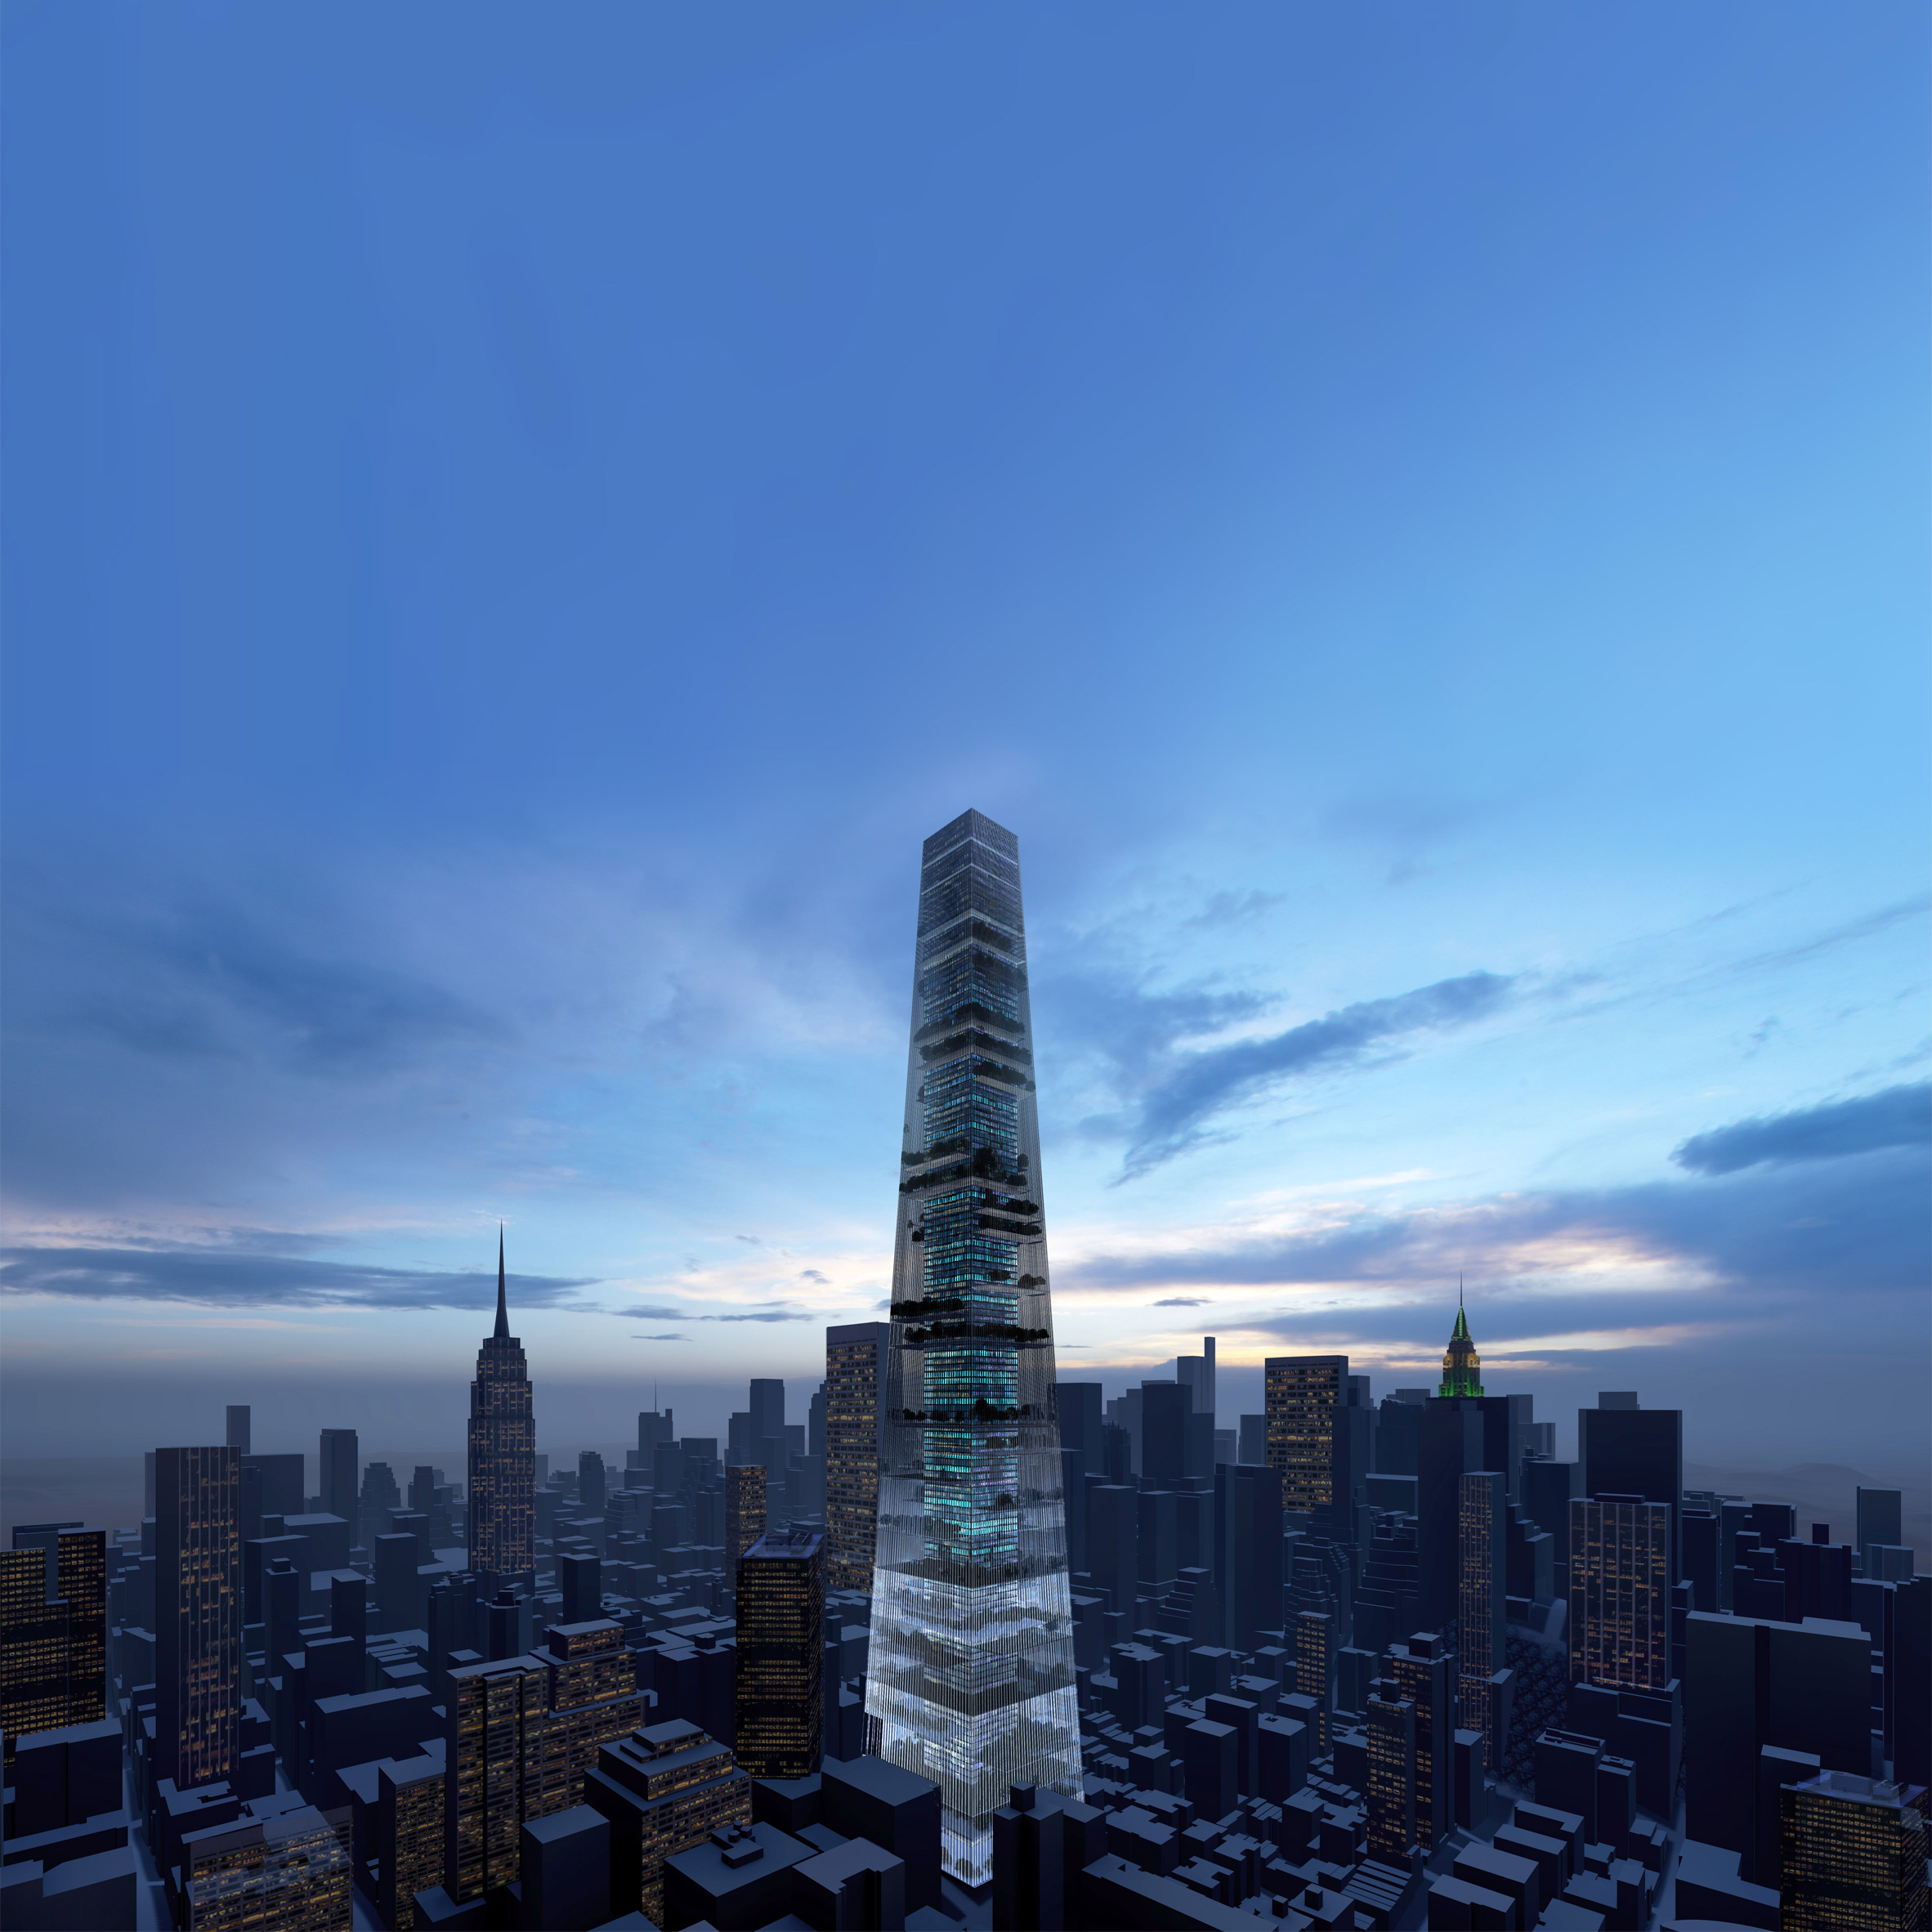 Piero Lissoni Designs Conceptual New York Skyscraper As Self Sufficient Garden City